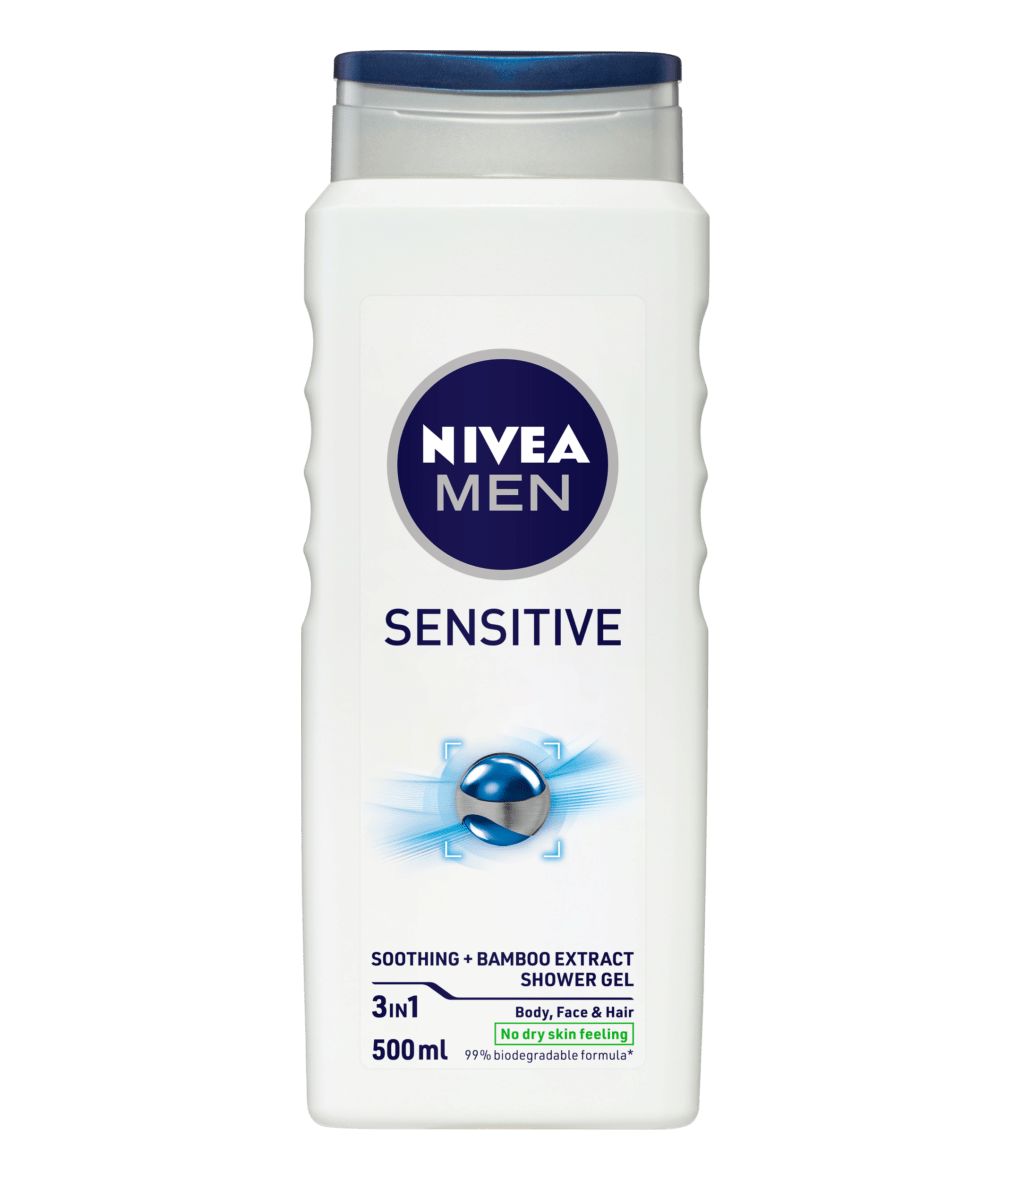 Nivea men sensitive. Nivea SPF 59 500 ml. Nivea men мыло. Sensitive Gel. Перевести gel